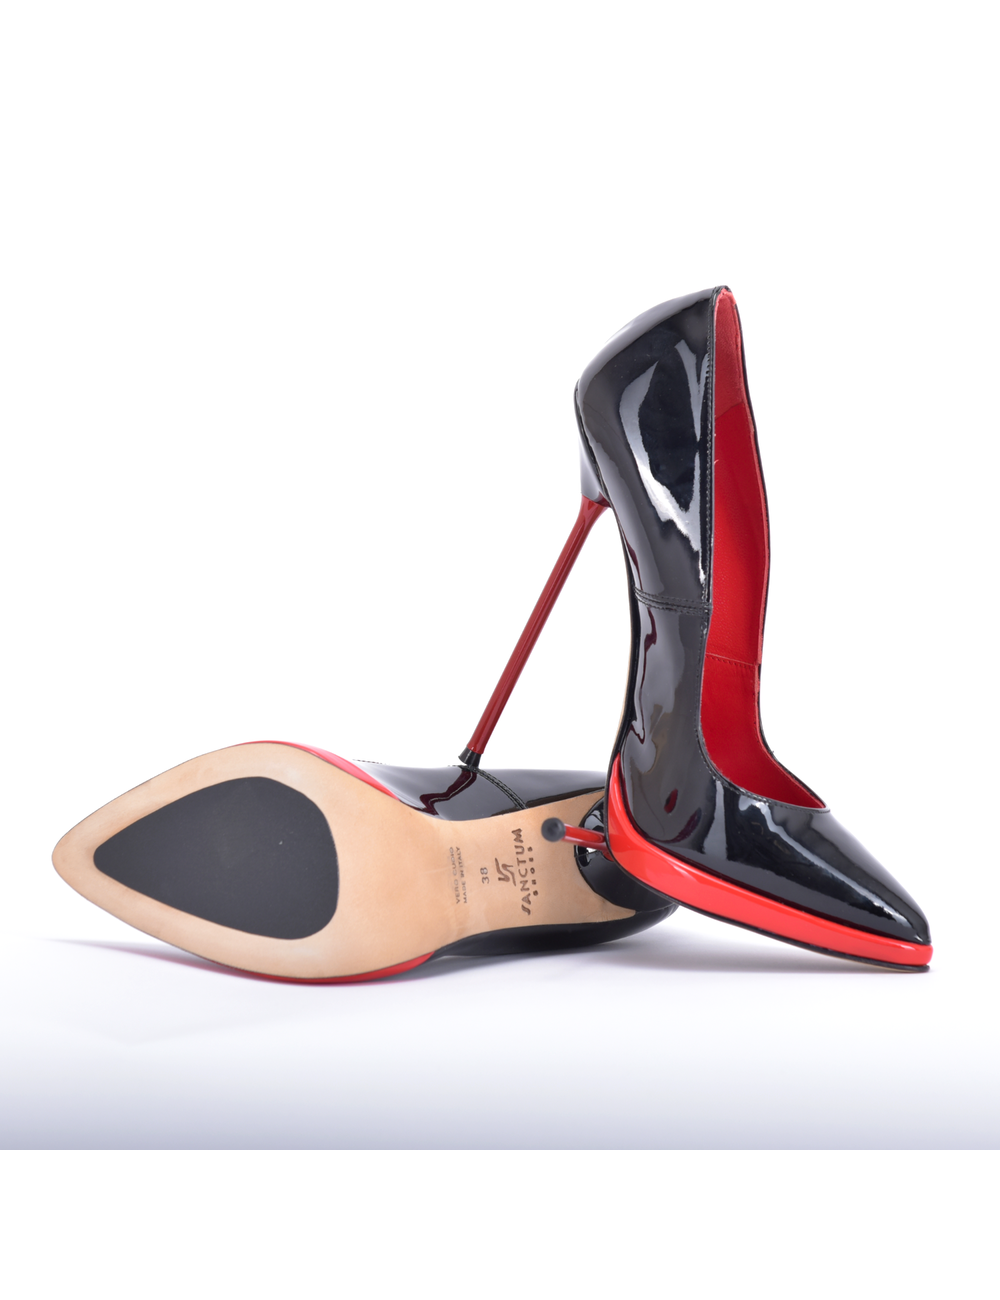 Sanctum Shoes SANCTUM PHOEBE 38 OUTLET GEMAAKT IN ITALIË SEXY PUMPS